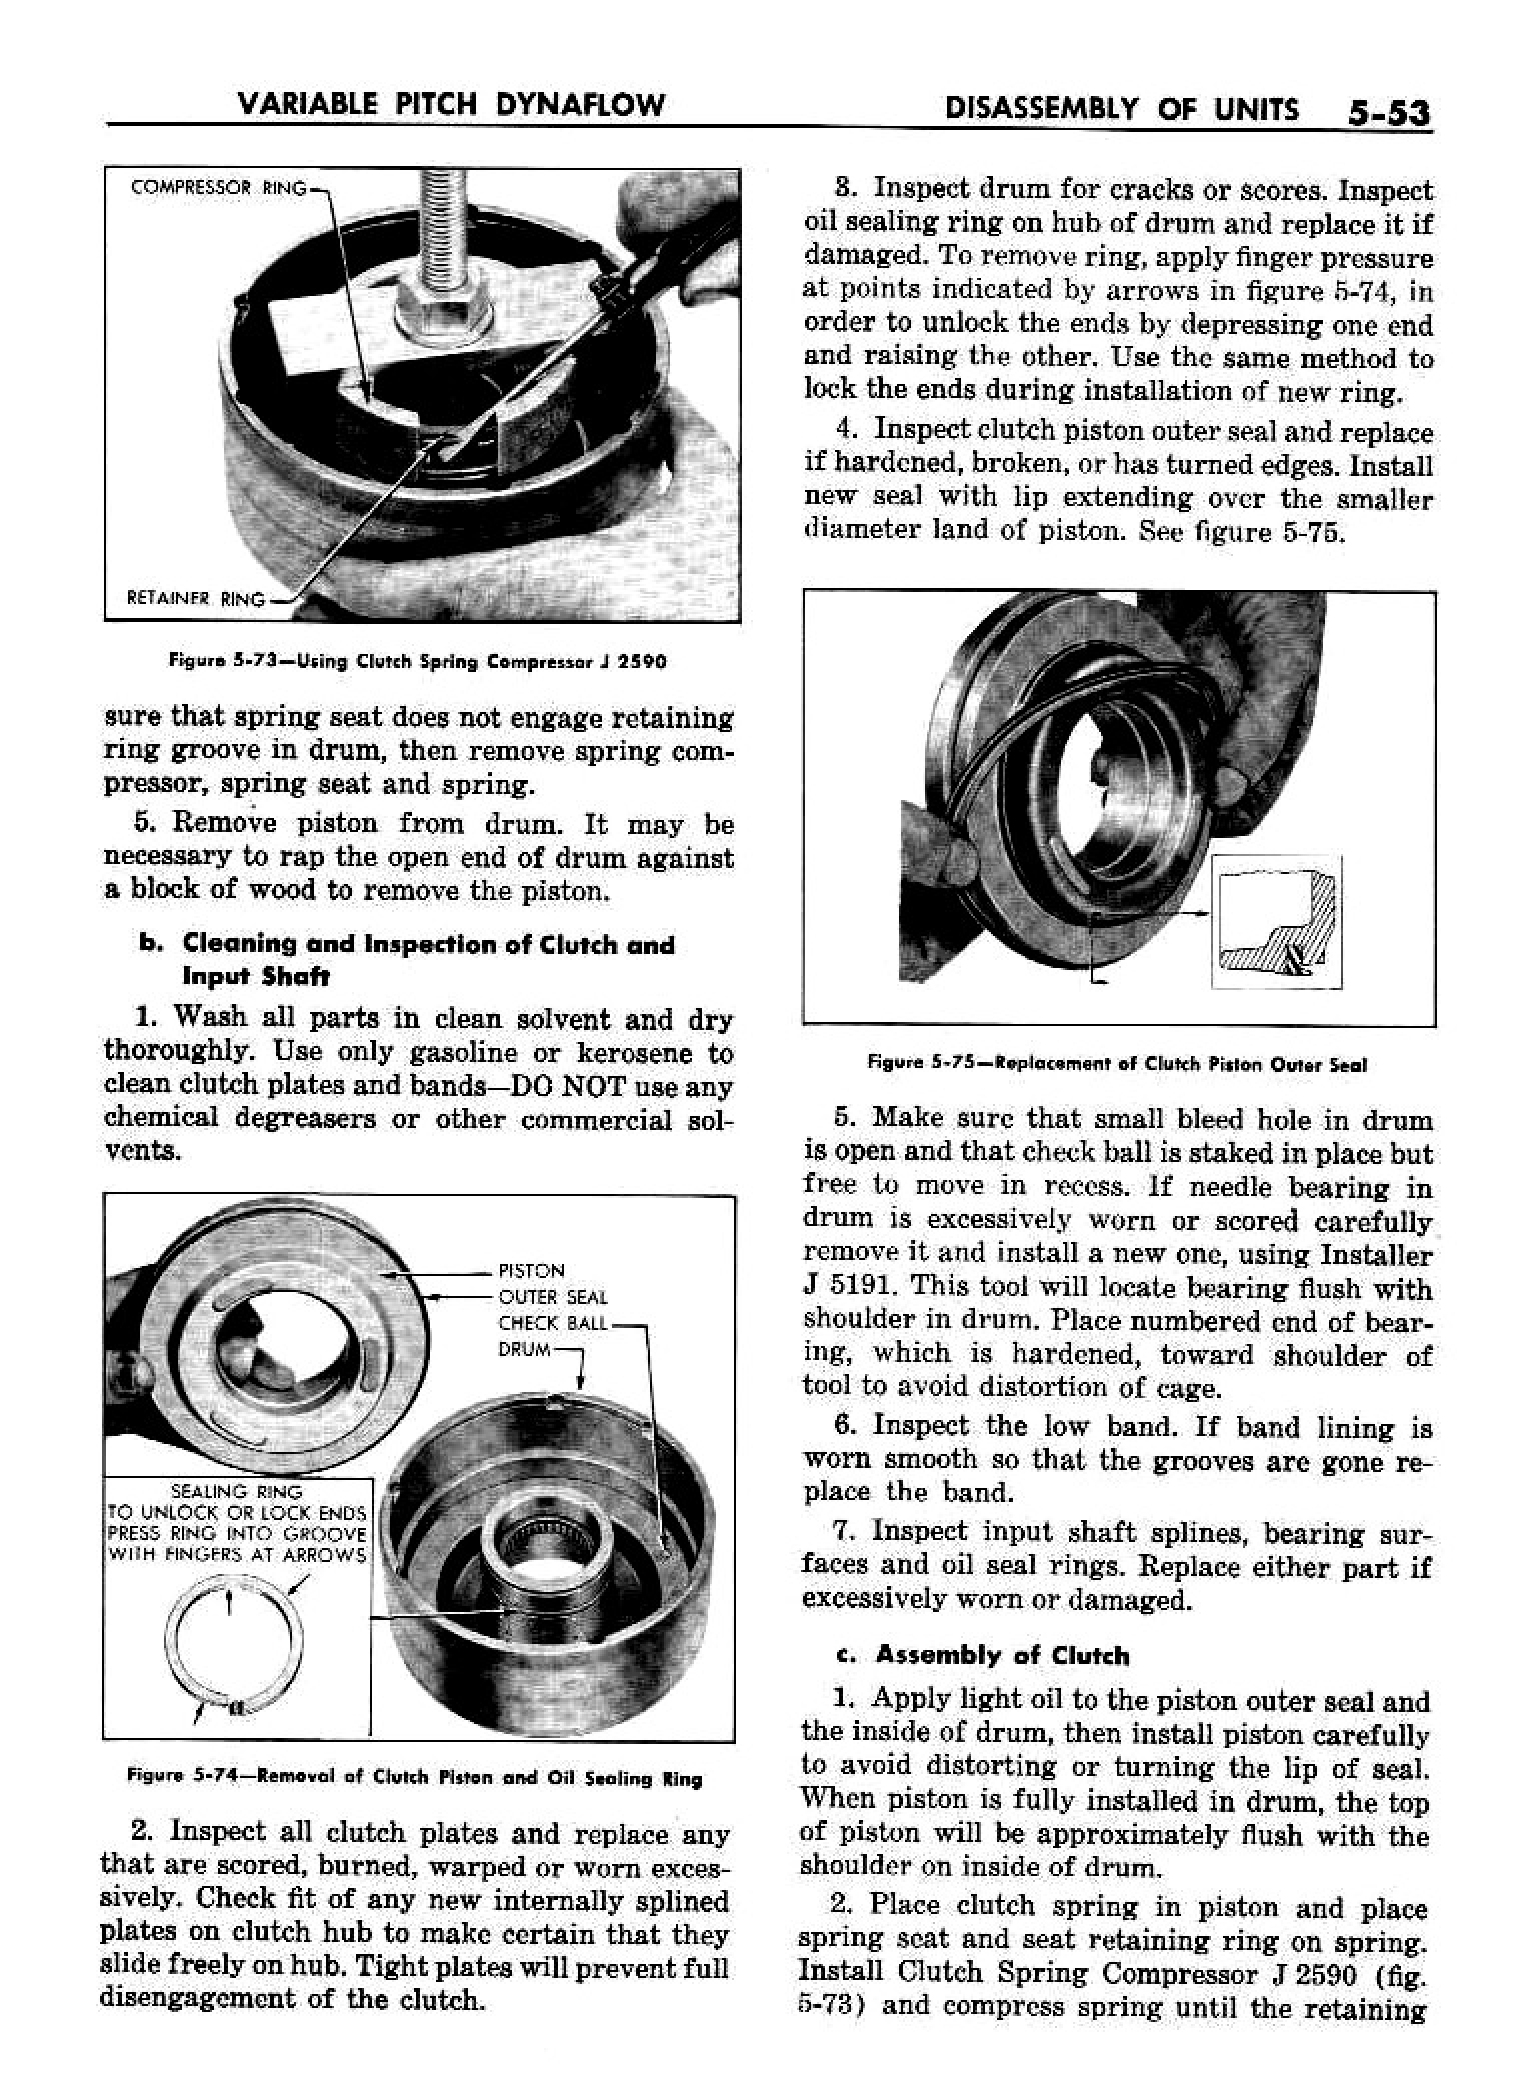 n_06 1958 Buick Shop Manual - Dynaflow_53.jpg